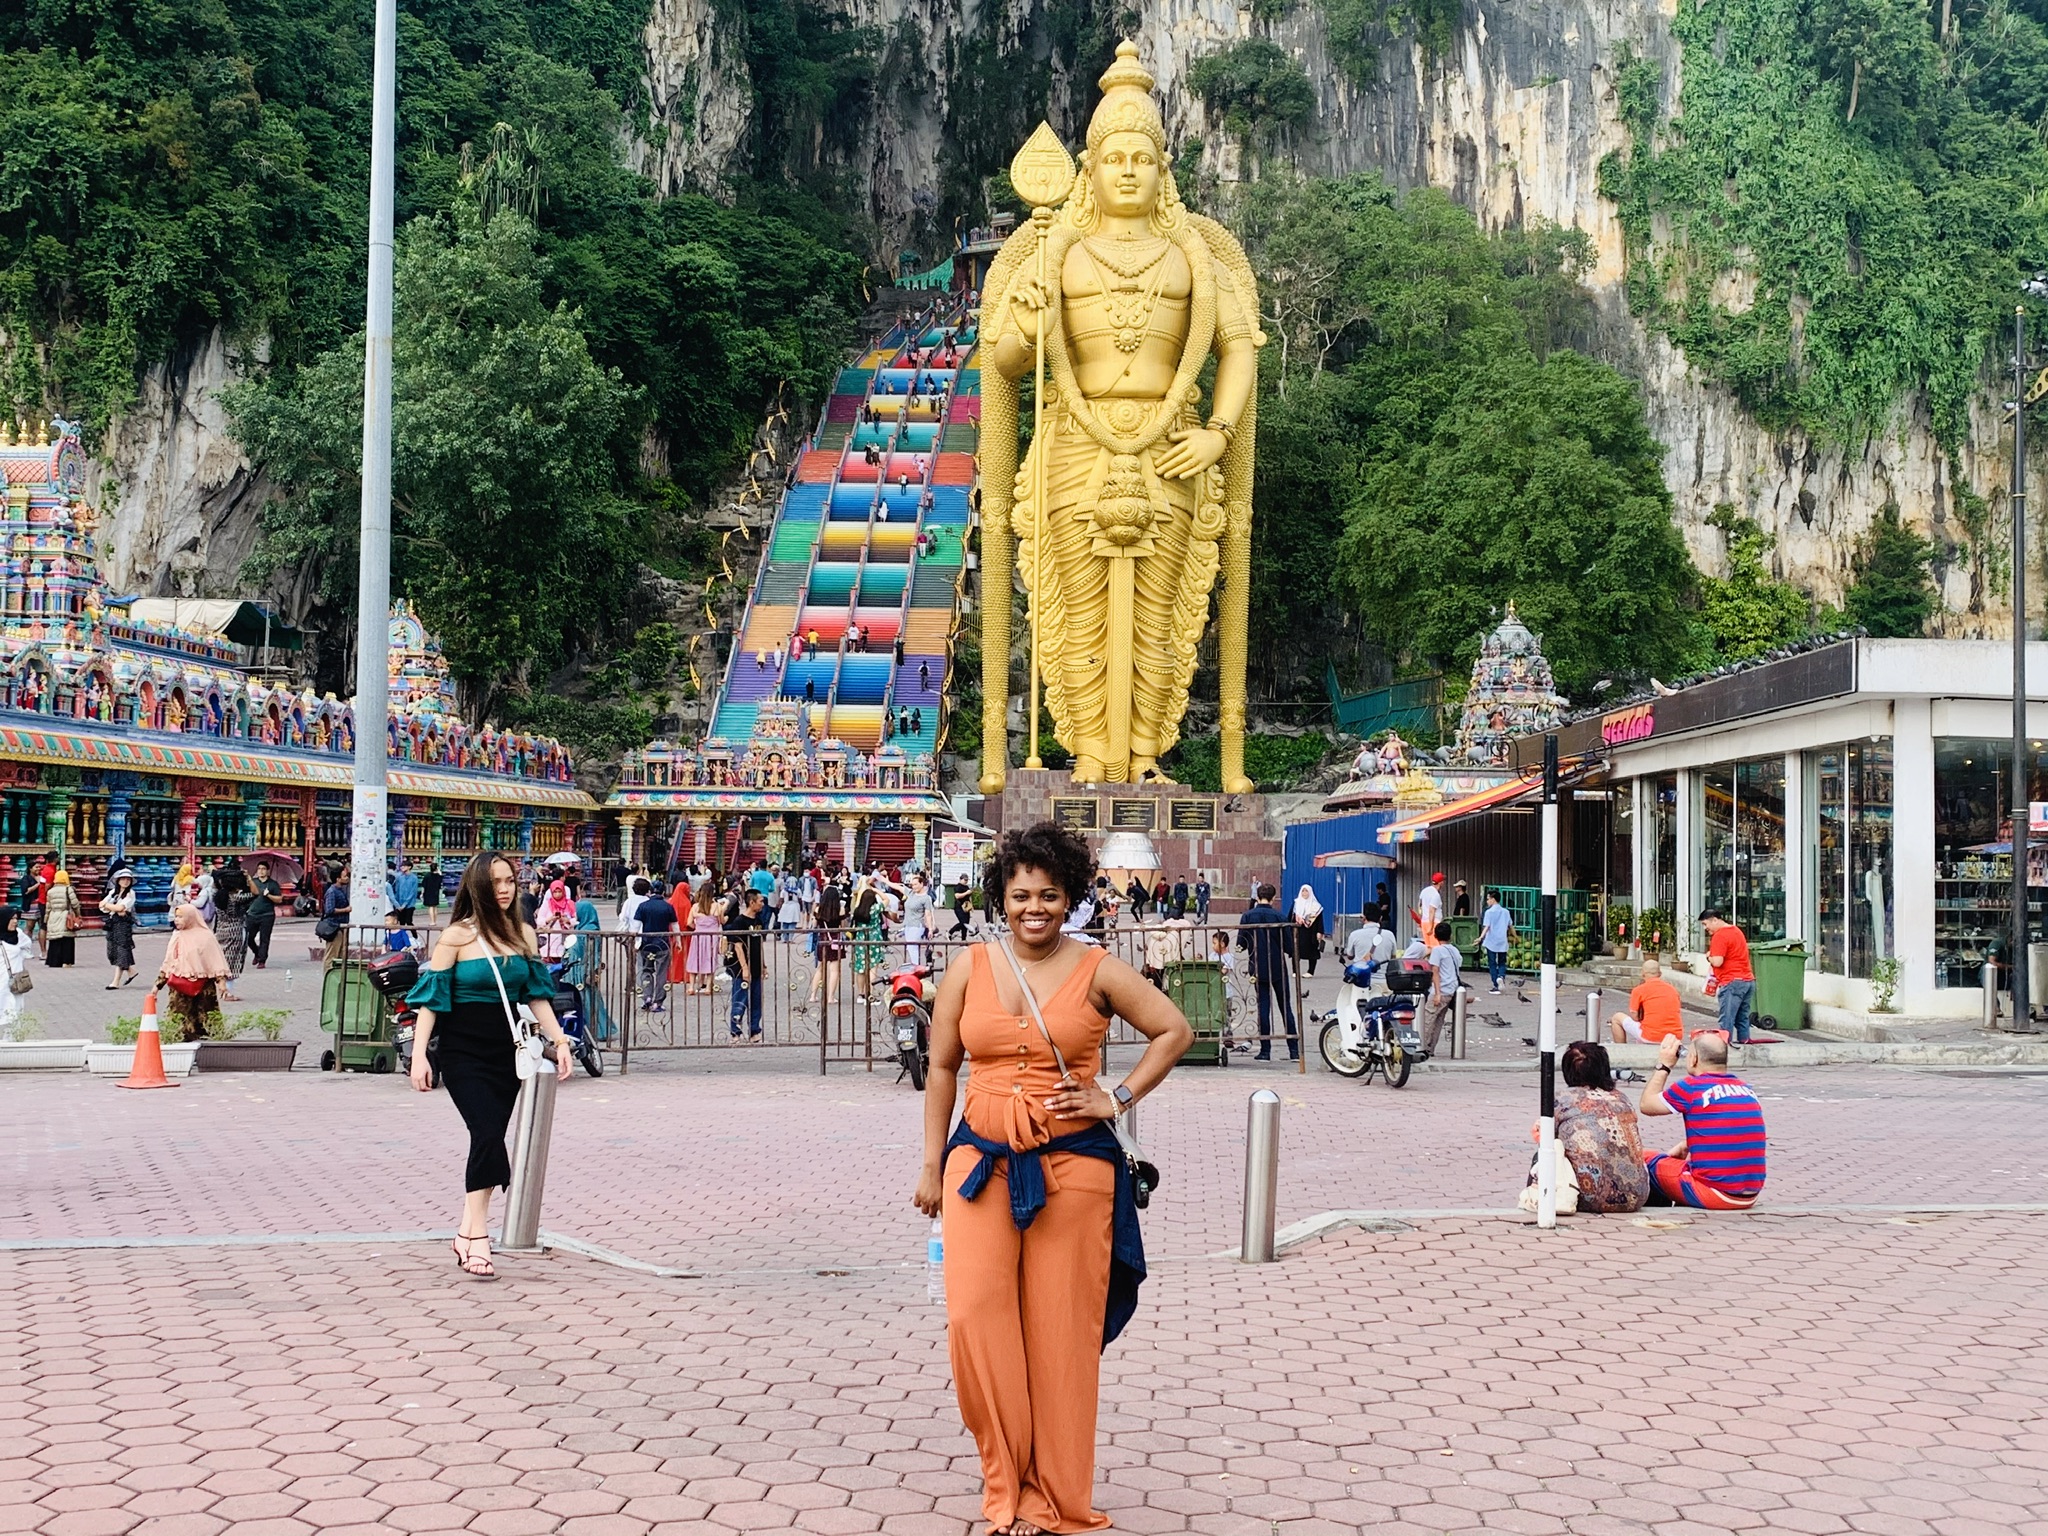 Malaysia 🇲🇾 Travel Vlog! Day 1 in Kuala Lumpur